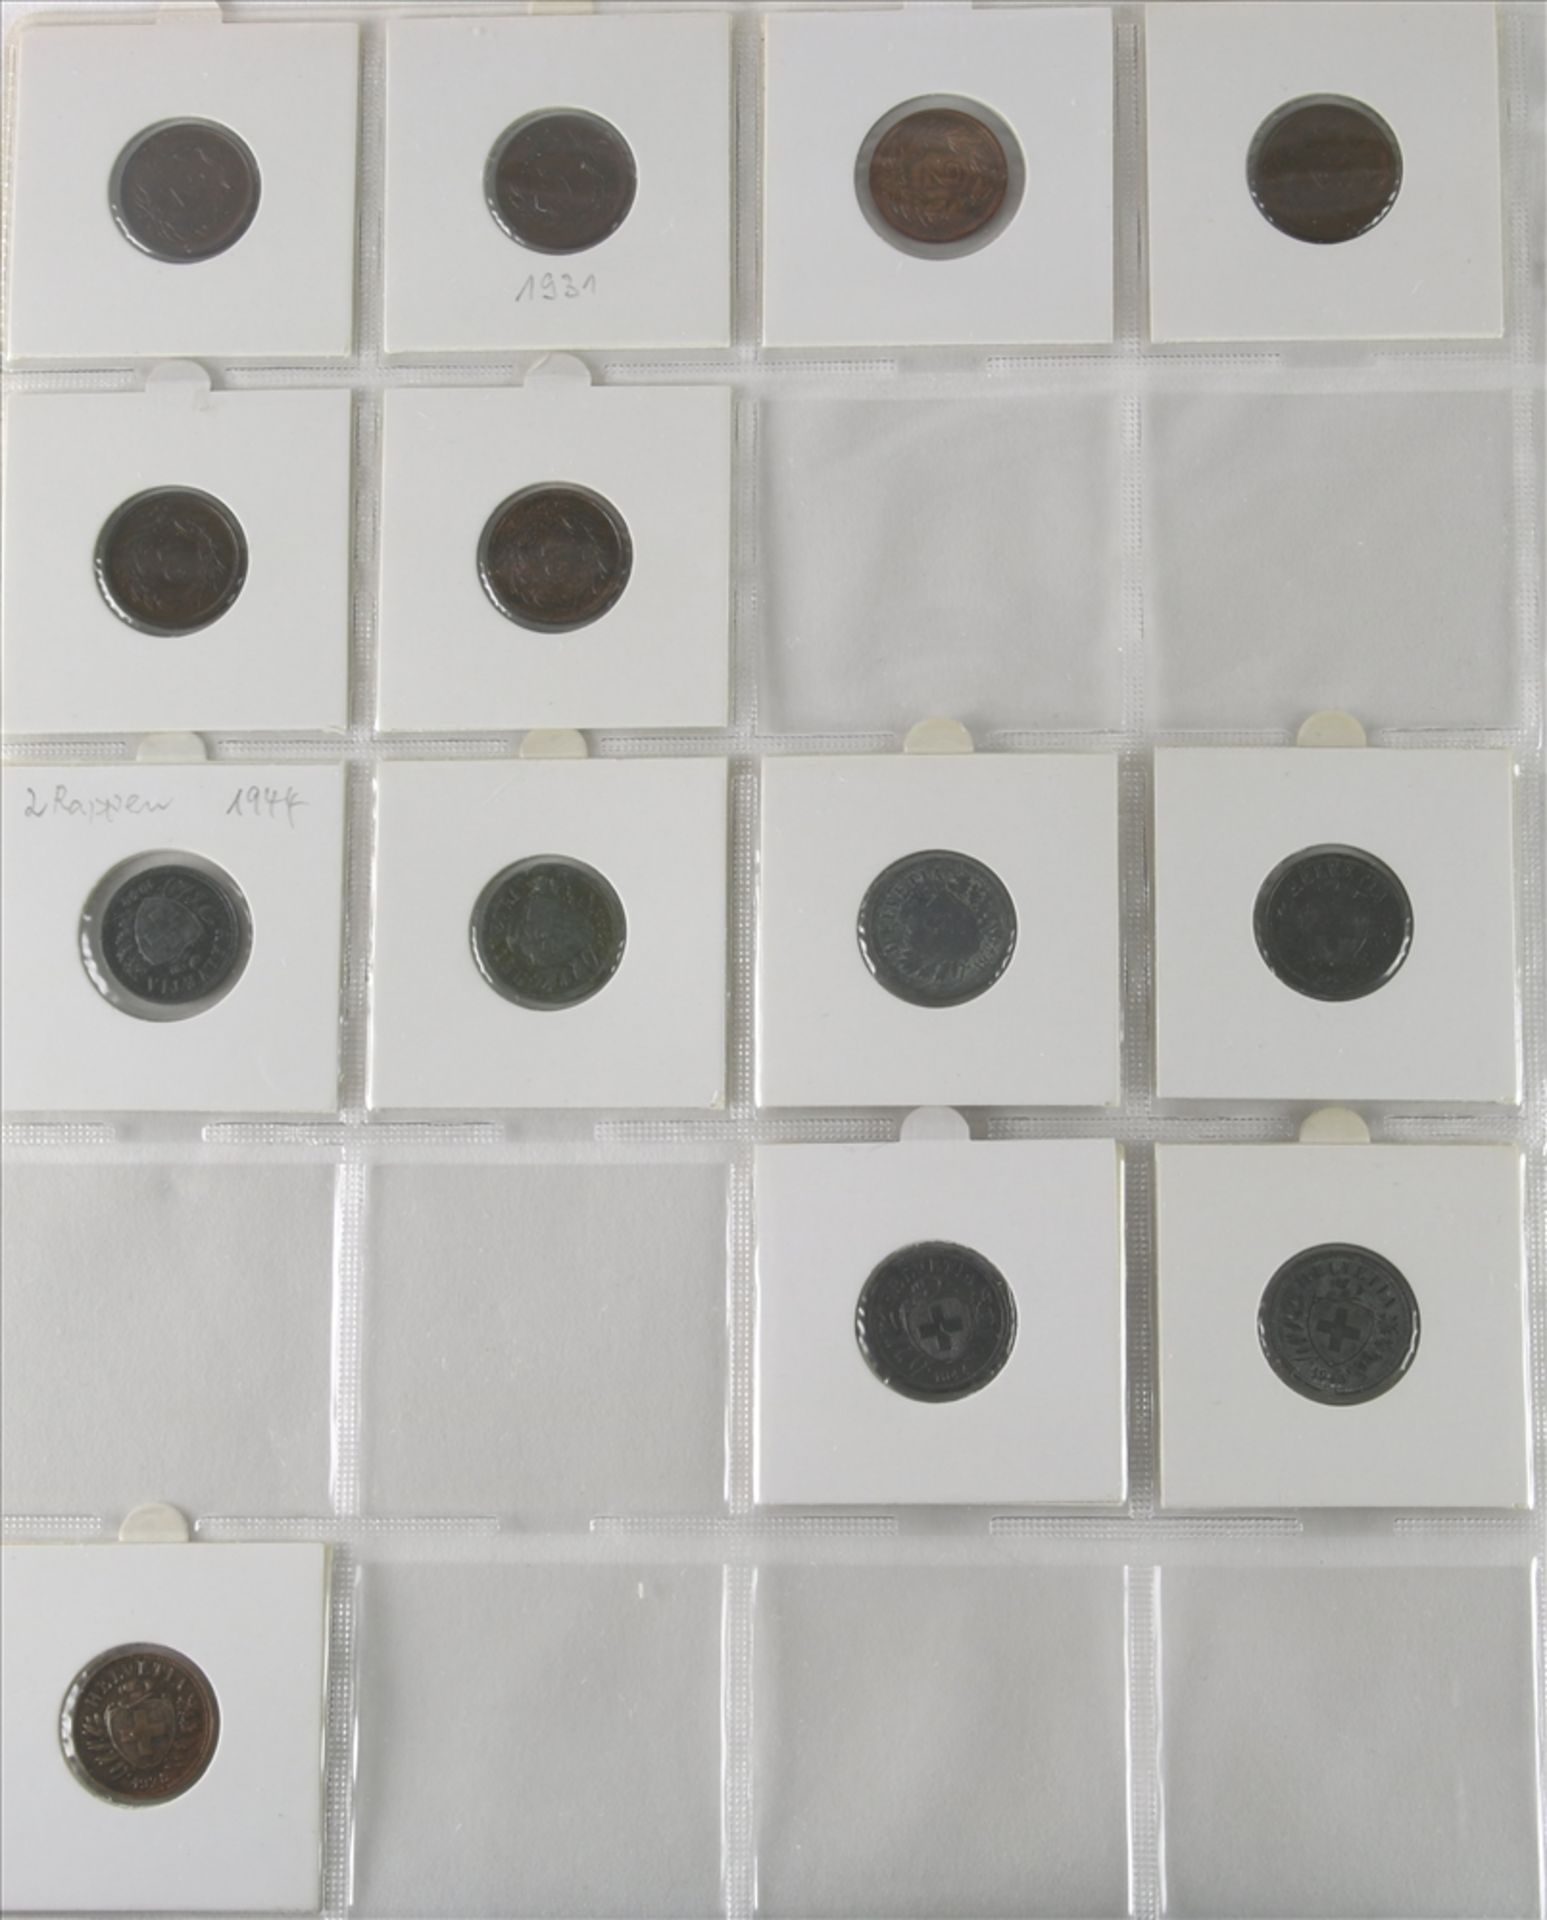 Konvolut Münzen 1-5-Rappen Stücke, Schweiz ab 1850. Unterschiedliche Jahrgänge und Zustände. U.a. - Bild 4 aus 5